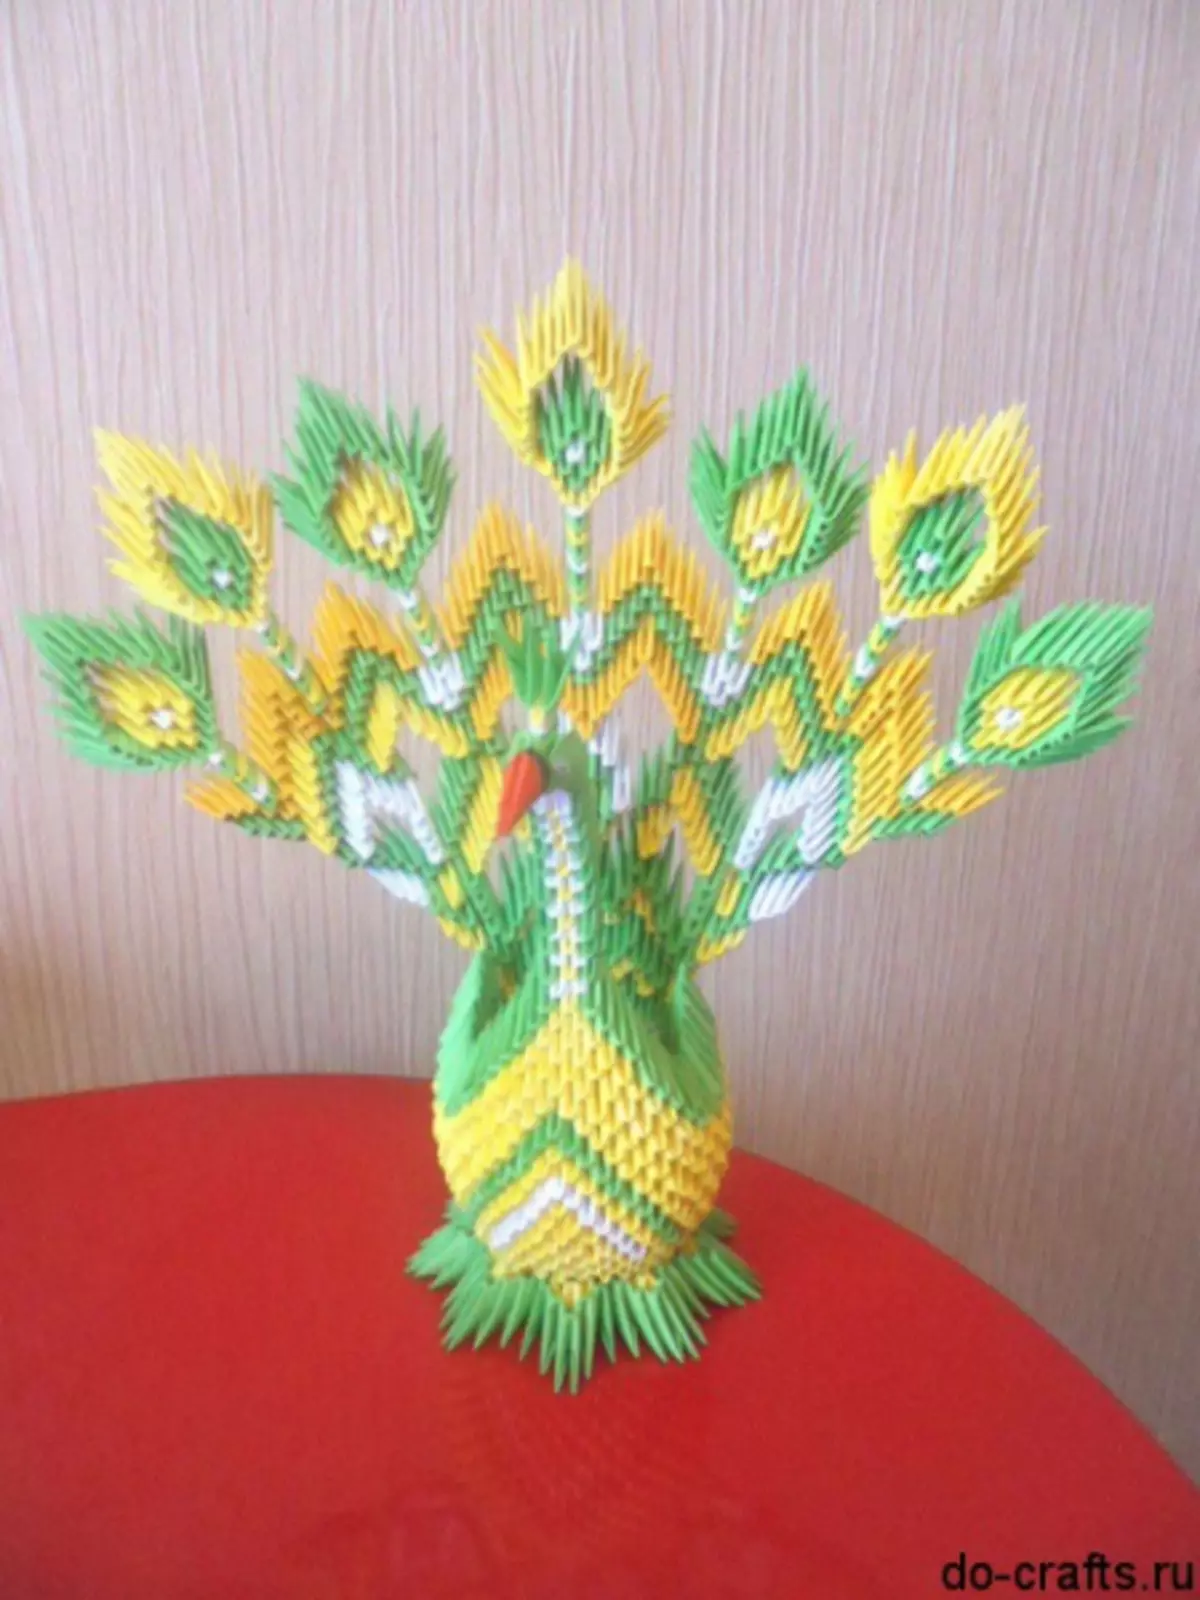 Modular Origami: Peacock, Master Class með samsetningu og myndband